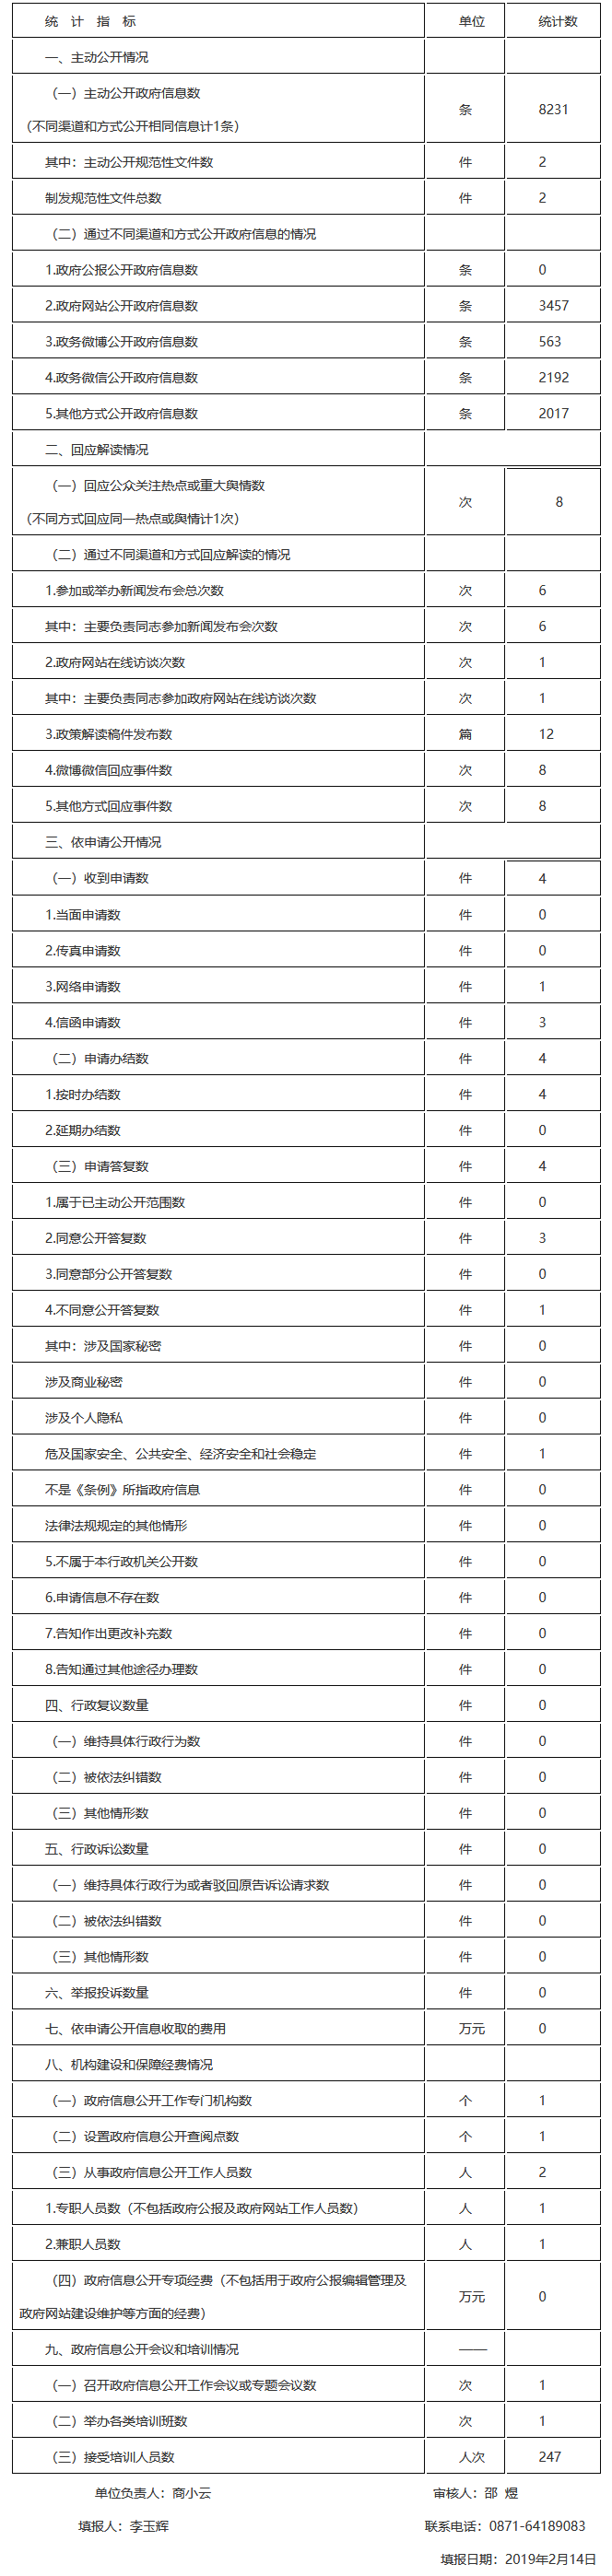 云南省司法厅2018年度政府信息公开工作的报告.png